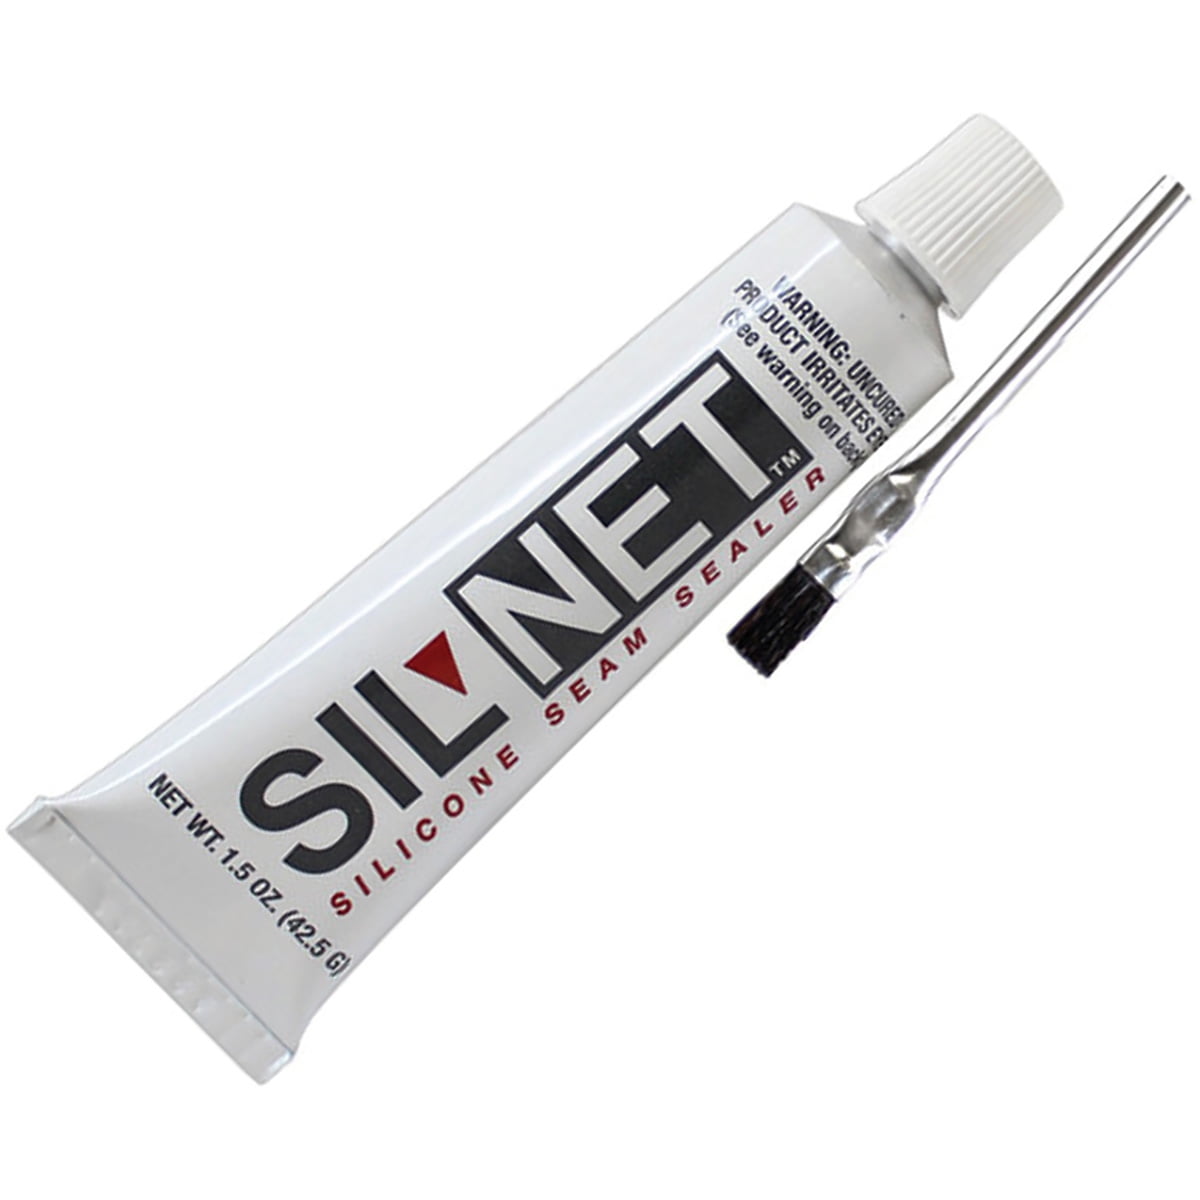 SilNet Seam Sealer 1.5 ounce - Seek Outside